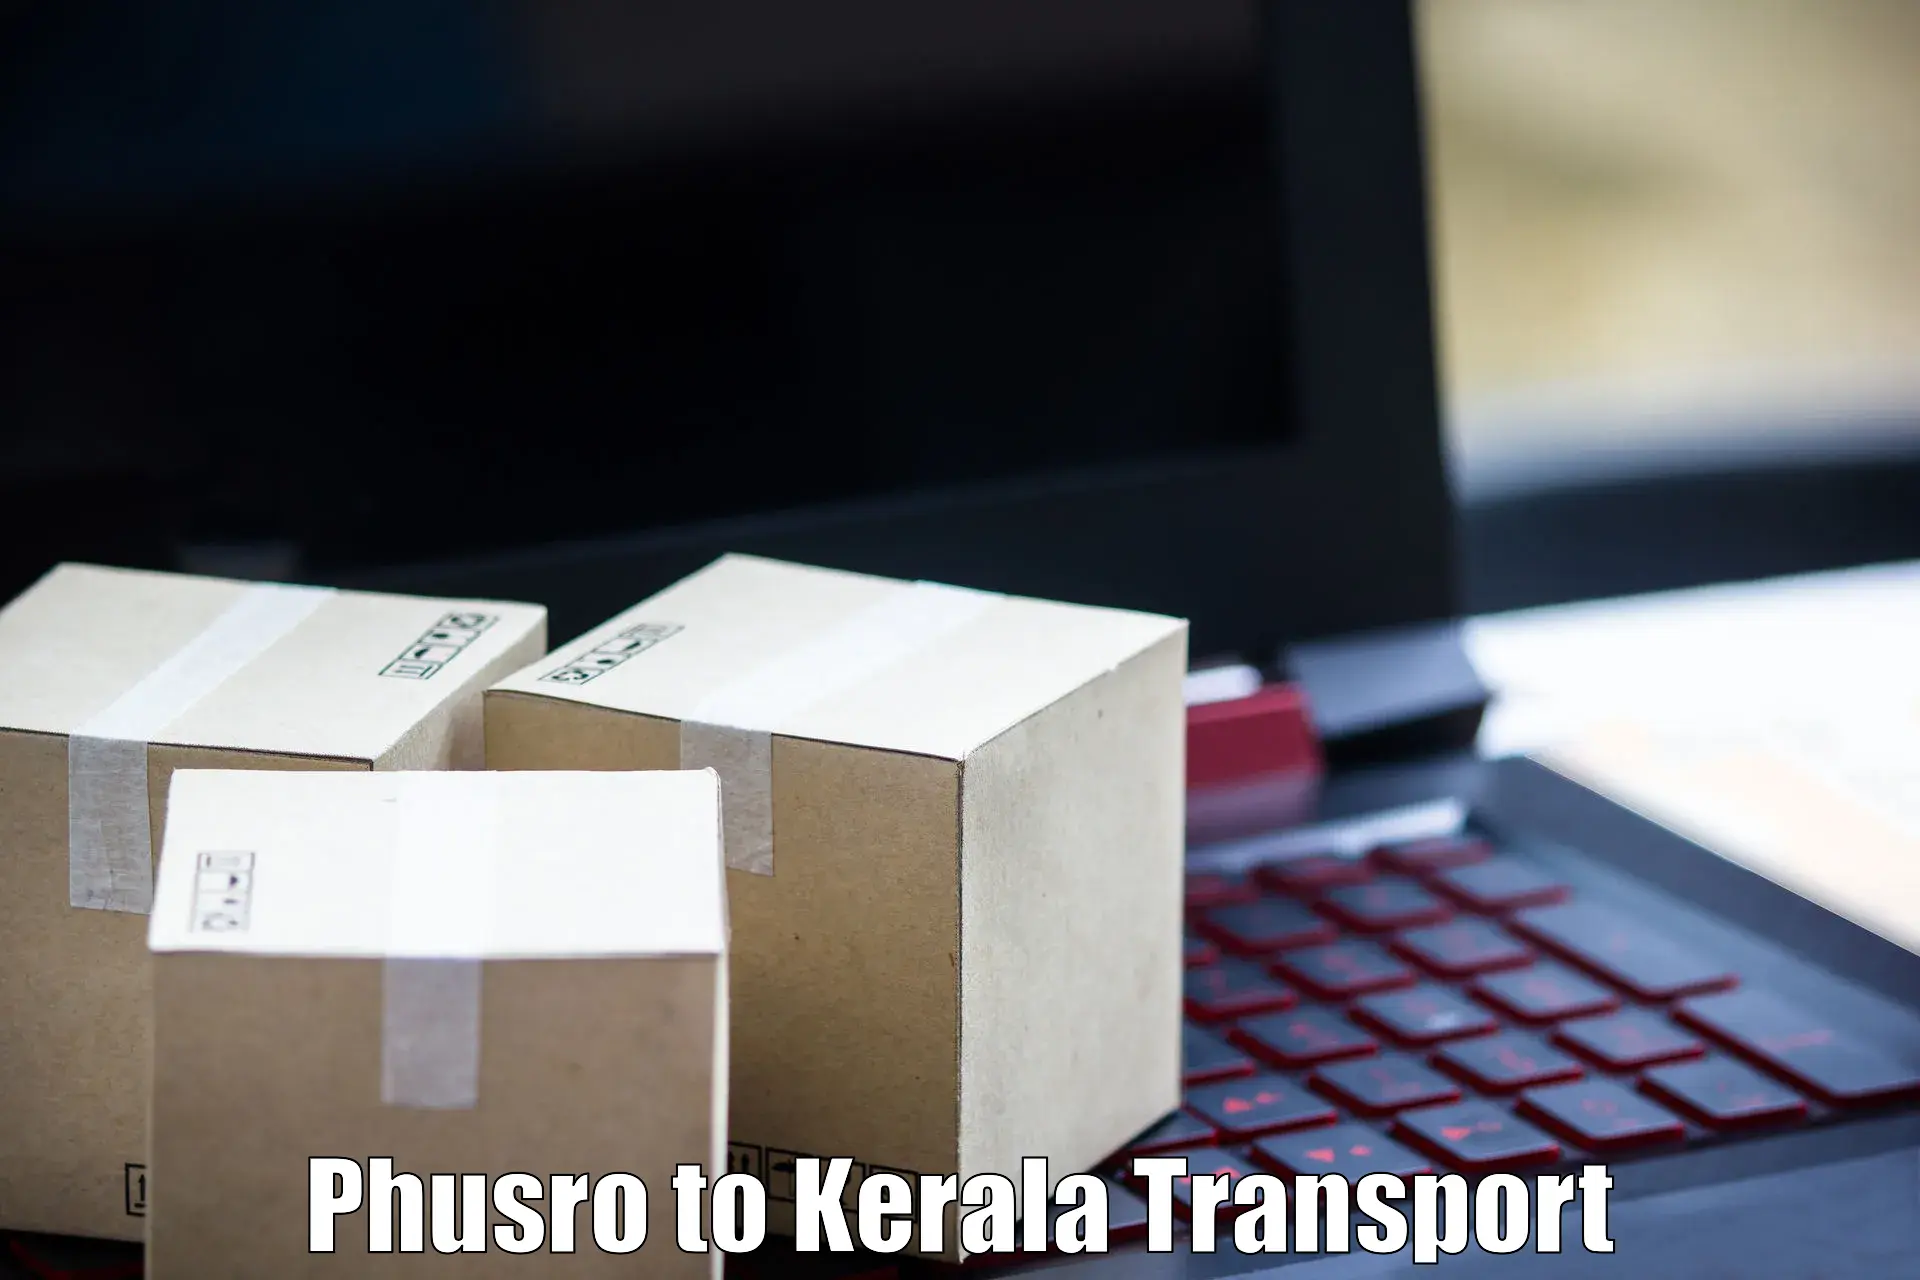 Online transport service Phusro to IIT Palakkad